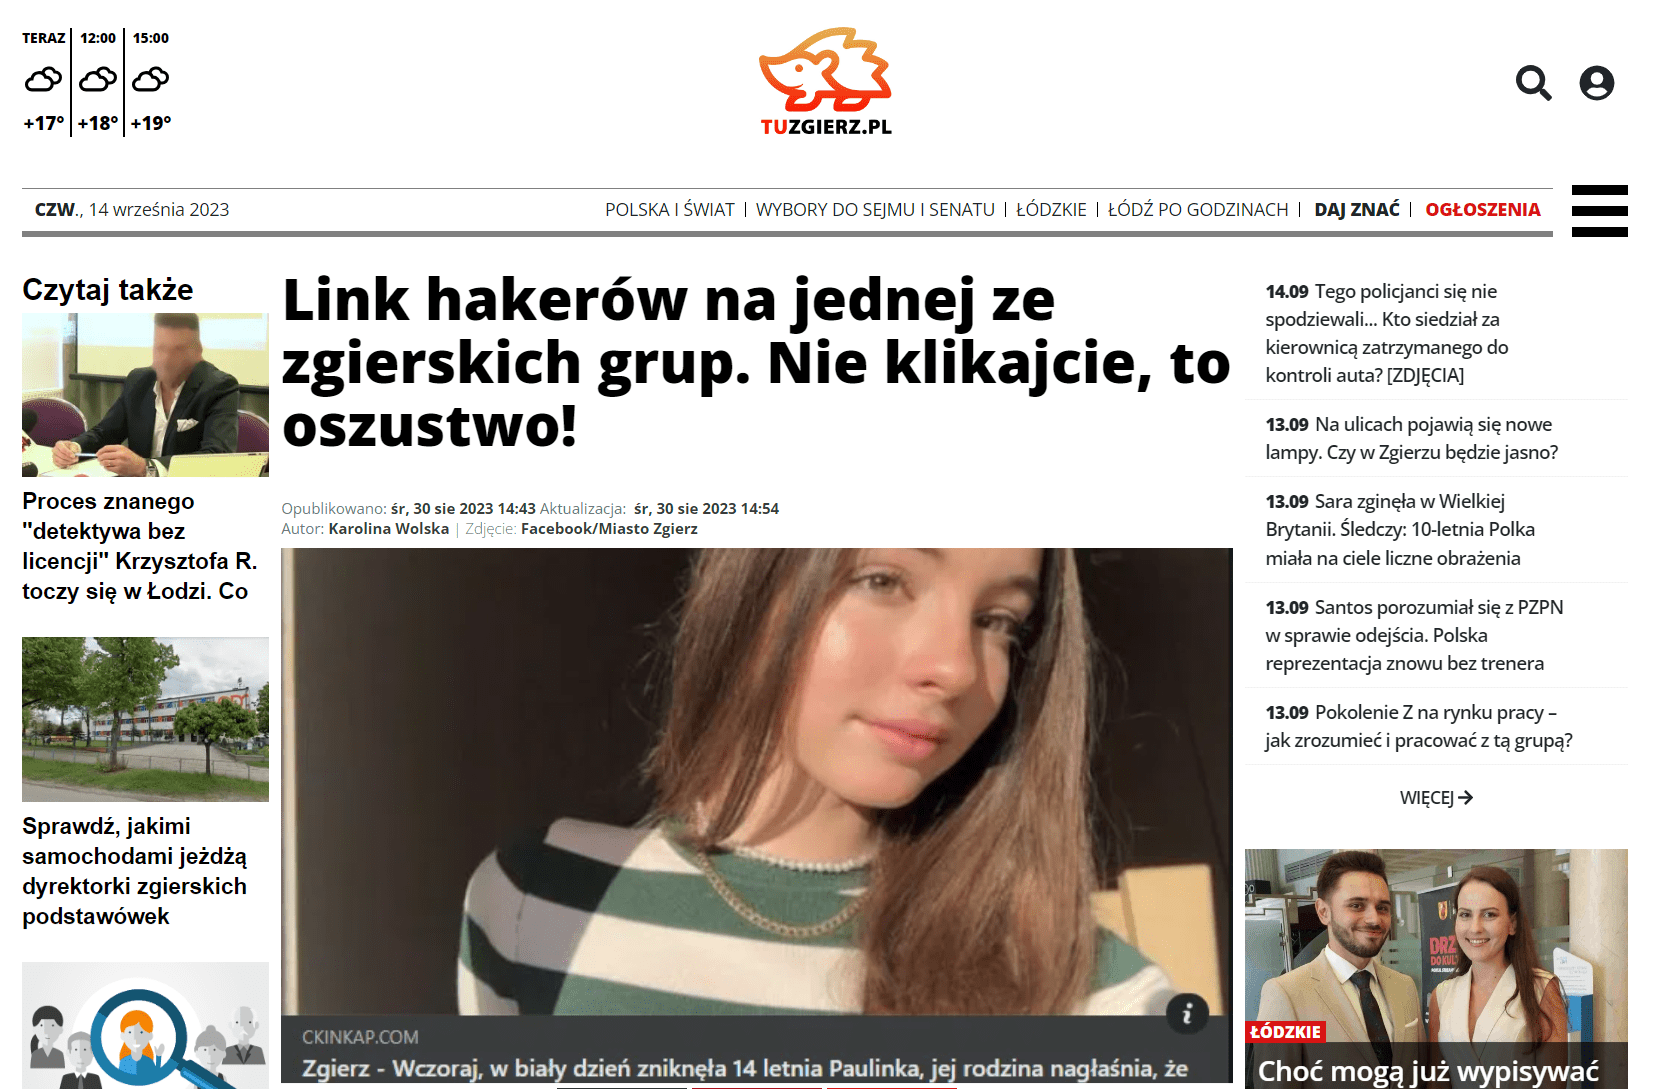 Zrzut ekranu ze strony mediów lokalnych tuzgierz.pl, w których opublikowano artykuł ostrzegający przed oszustwem. Wykorzystano w nim to samo zdjęcie i tę samą treść posta, co w omawianych wpisach.